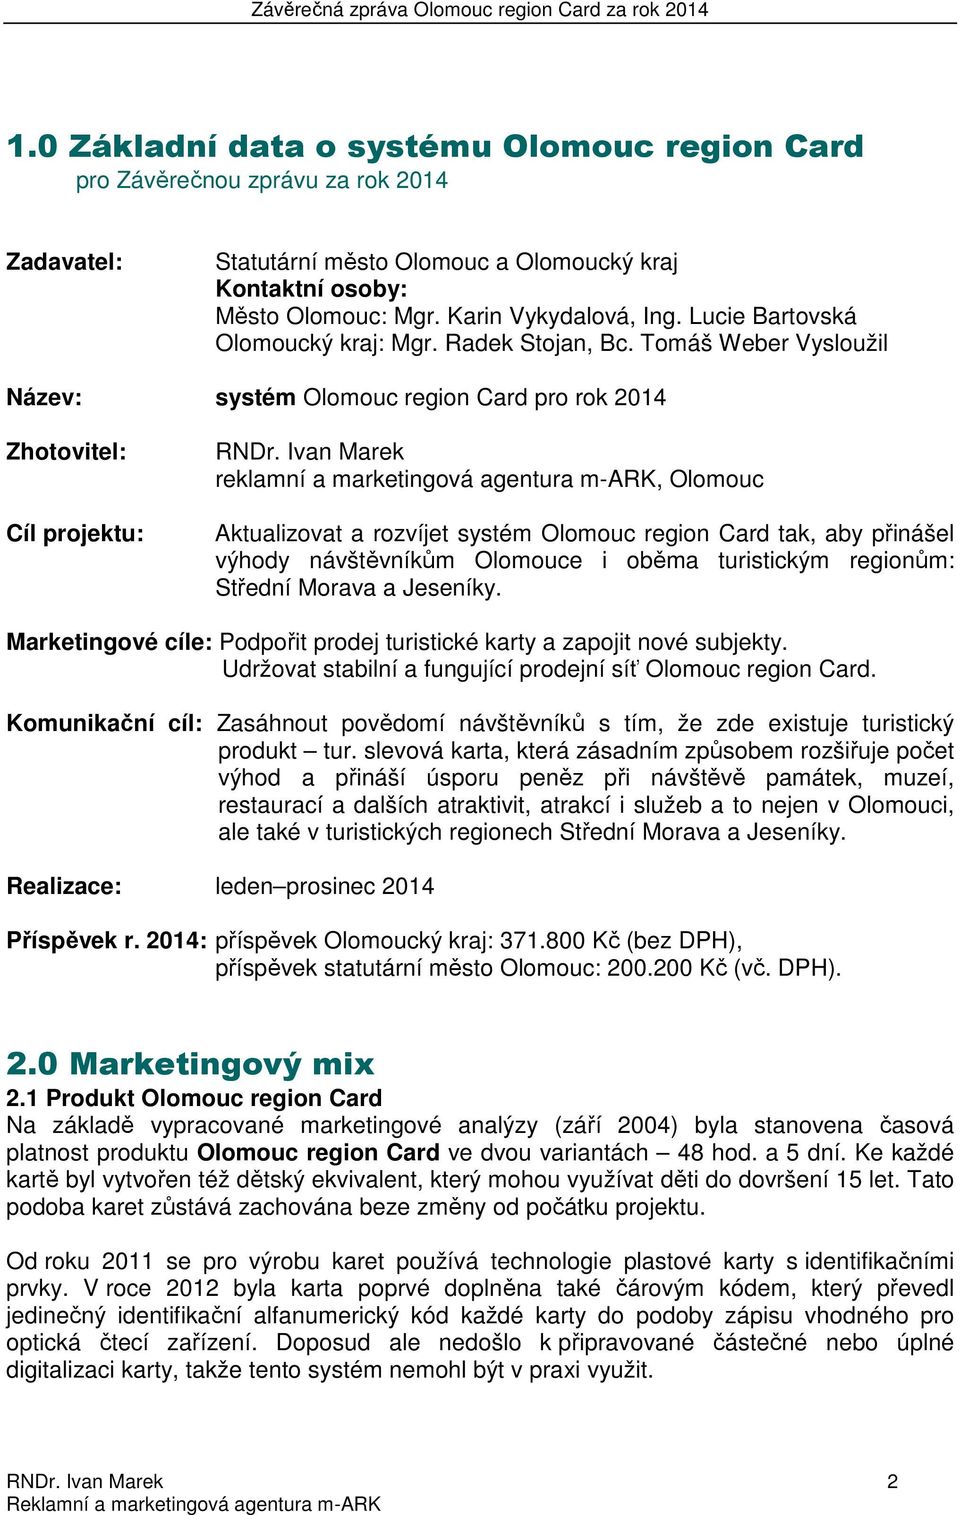 Ivan Marek reklamní a marketingová agentura m-ark, Olomouc Aktualizovat a rozvíjet systém Olomouc region Card tak, aby přinášel výhody návštěvníkům Olomouce i oběma turistickým regionům: Střední